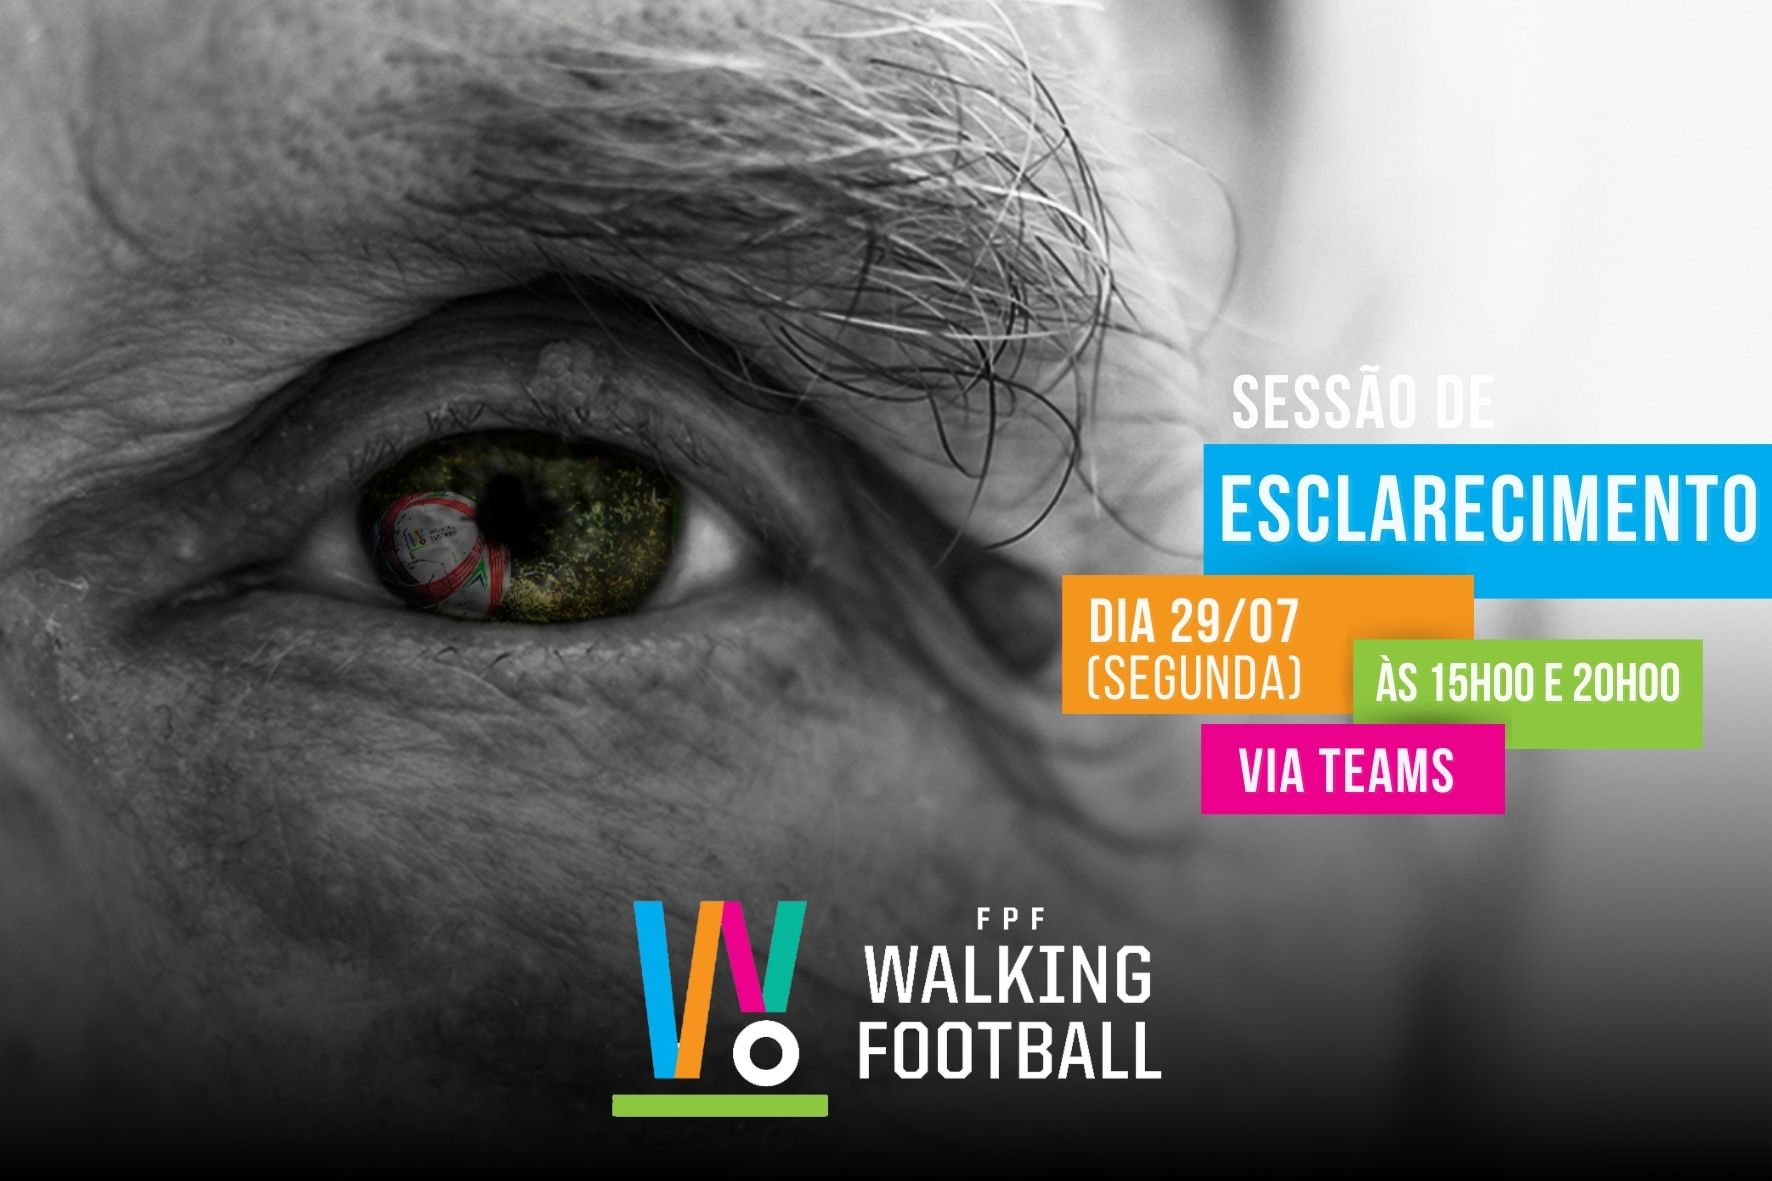 Walking Football | Sessão de Esclarecimento FPF